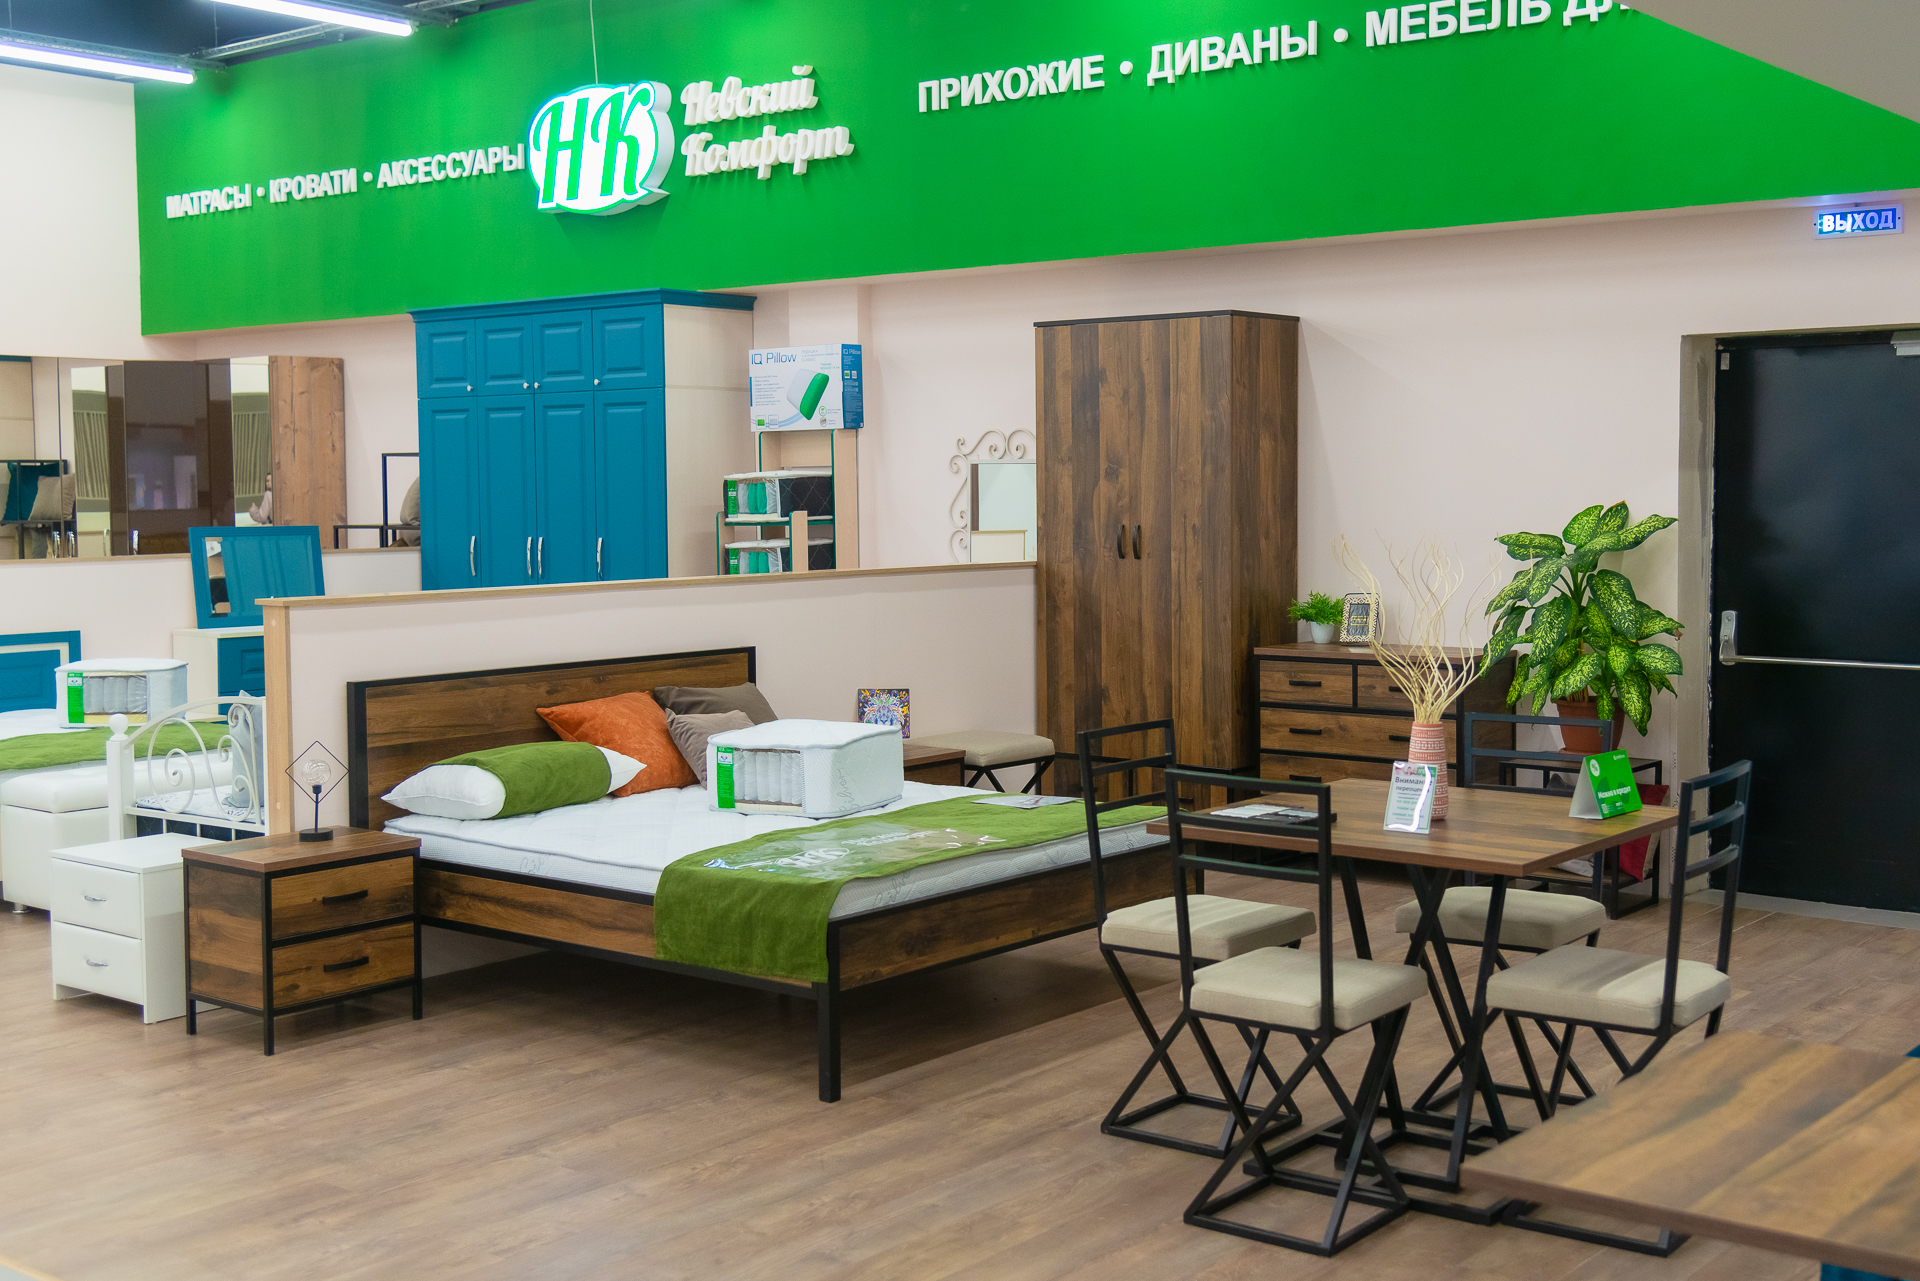 Фабрика «Невский комфорт» производит матрасы, кровати, мебель и аксессуары для спальни. Также у бренда есть прихожие и диваны